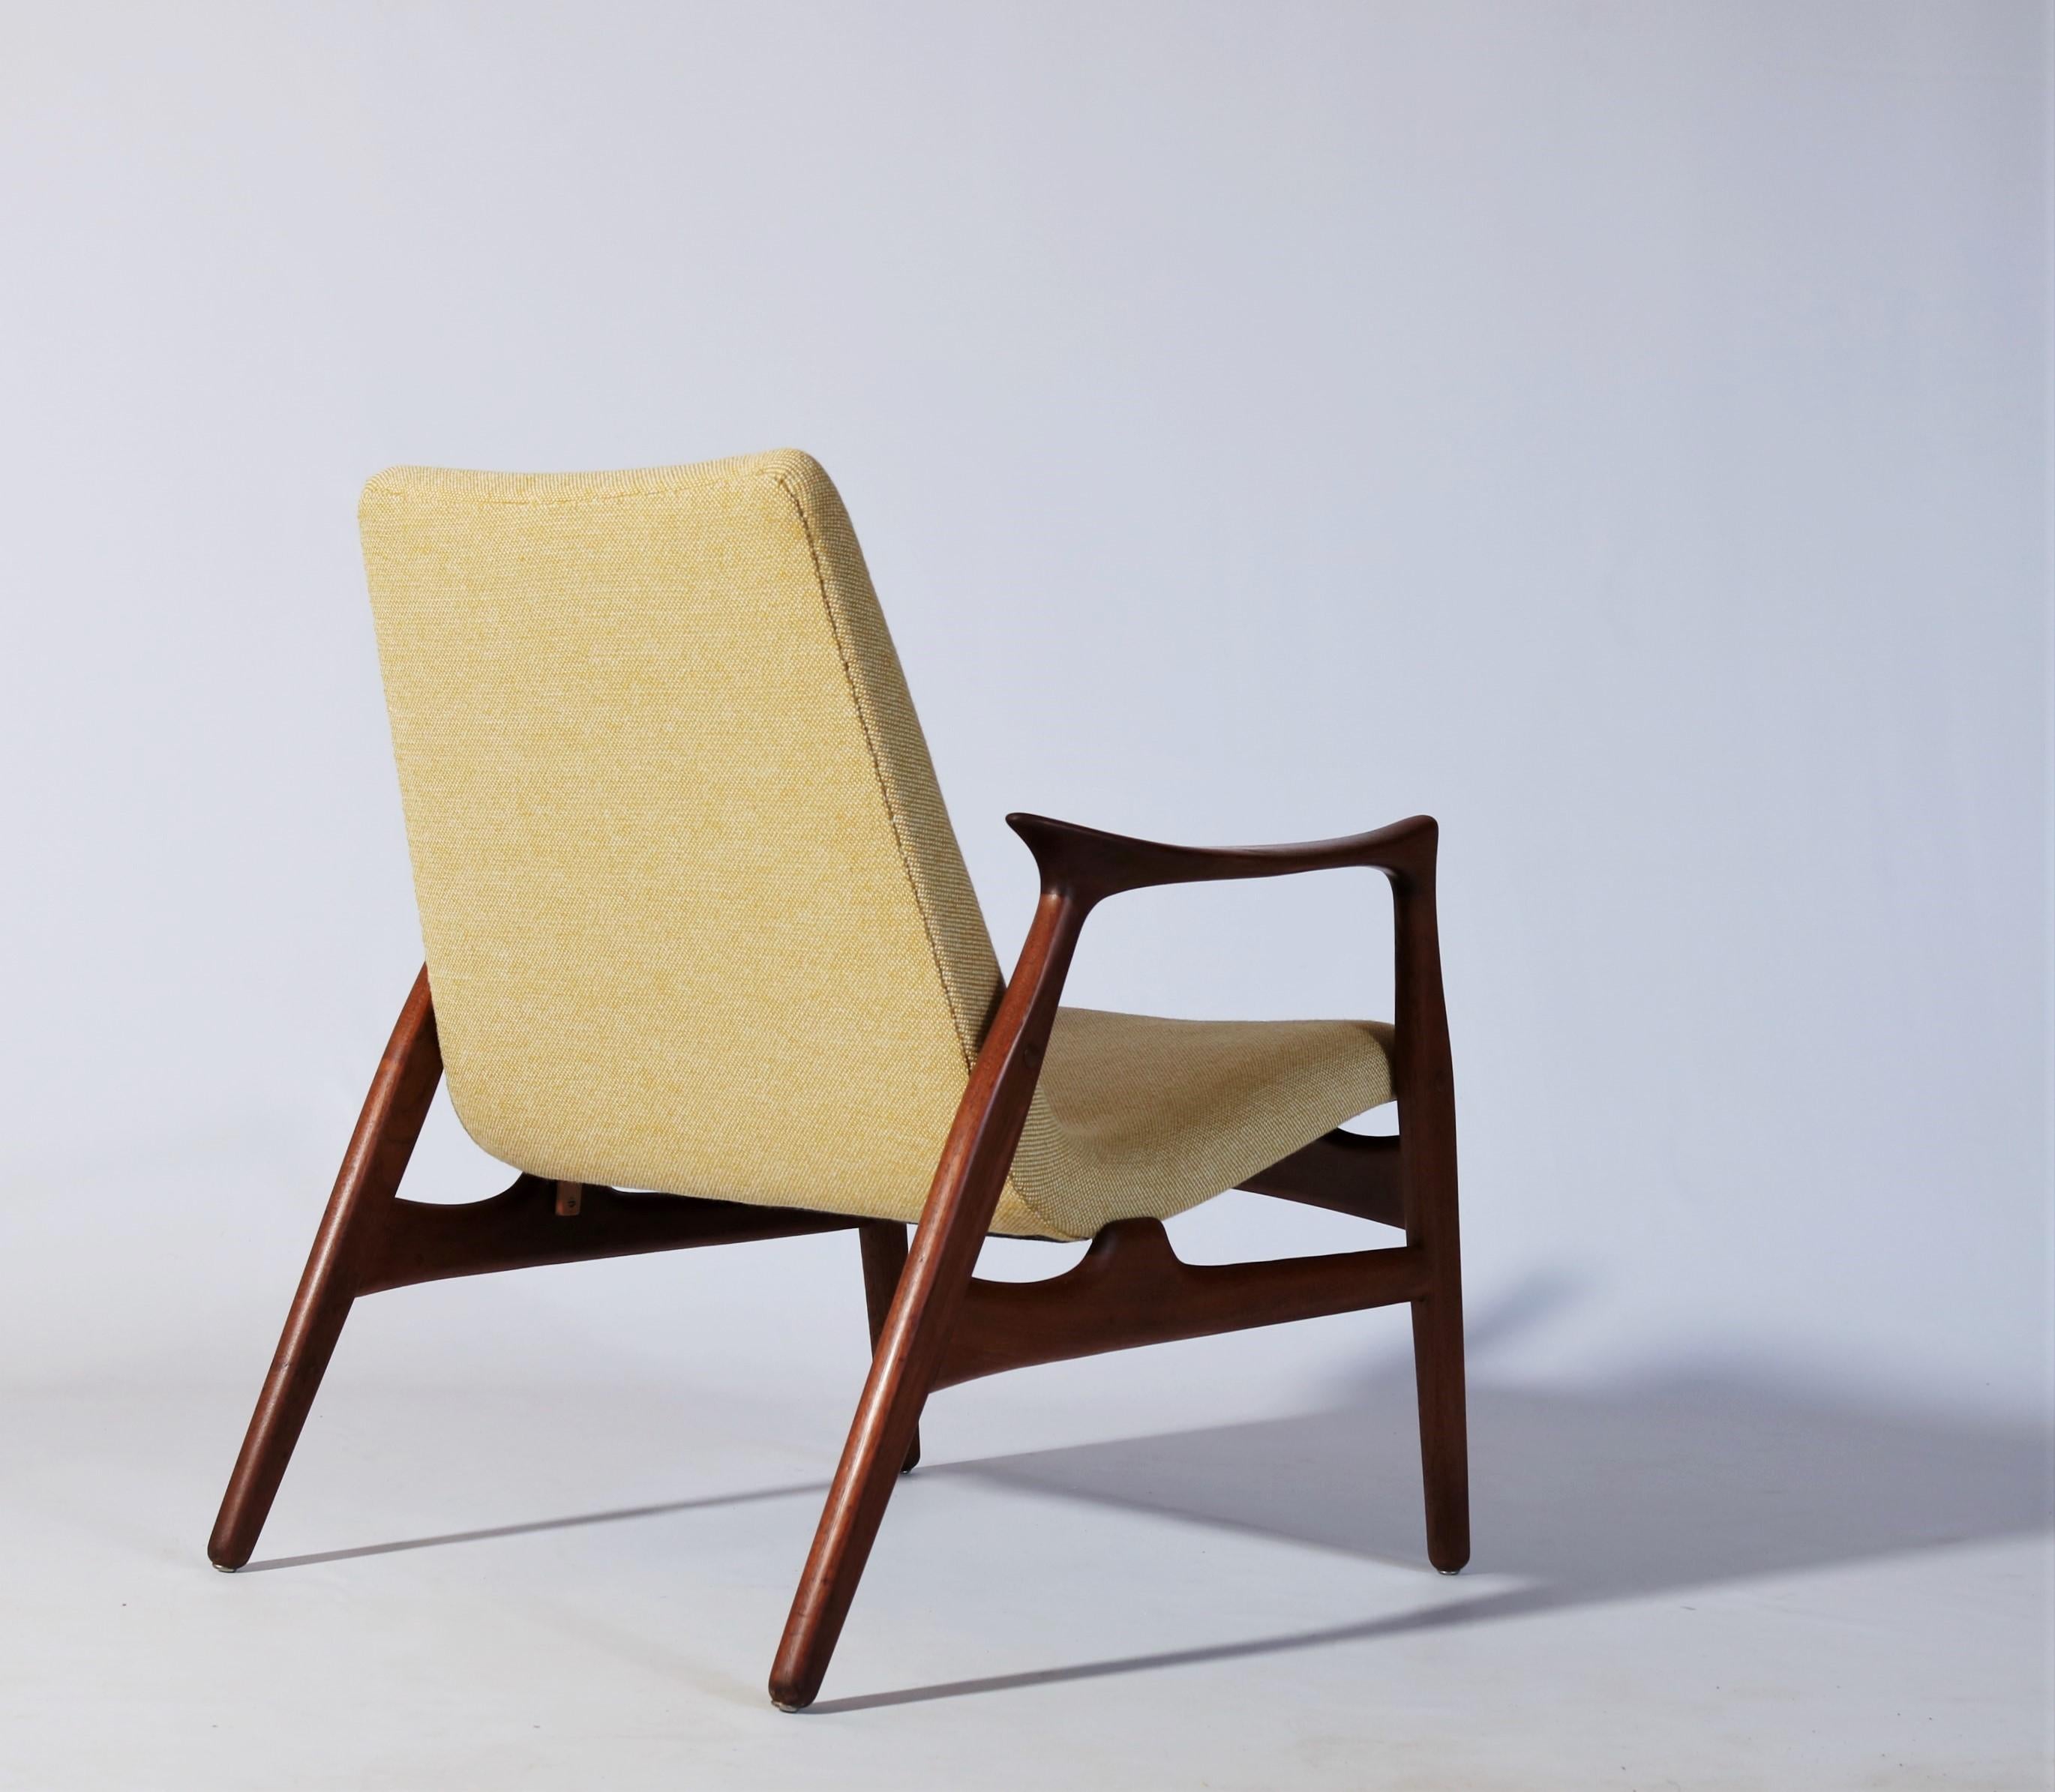 Wool Danish Modern Easy Chair in Teak Wood by Arne Hovmand Olsen, Denmark, 1958